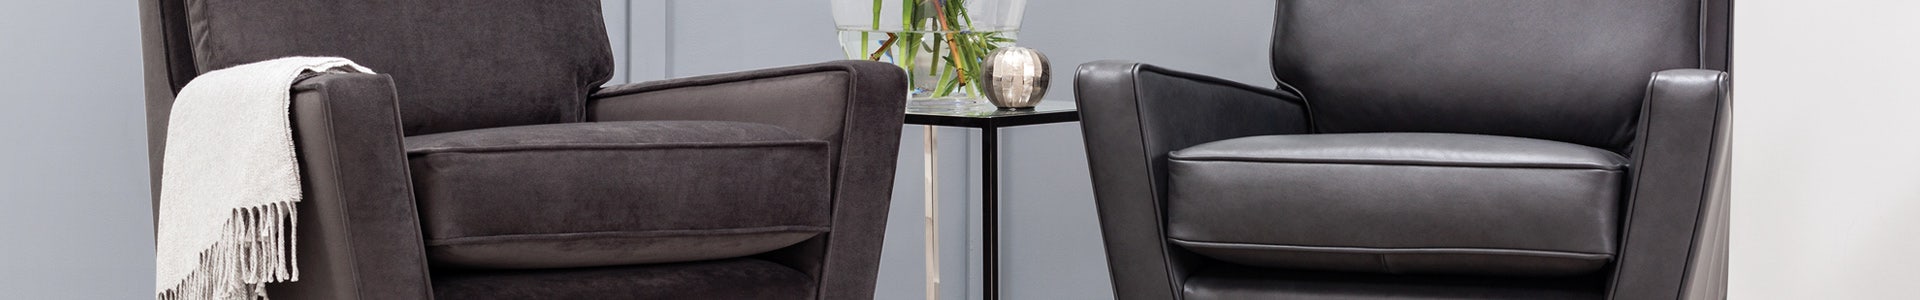 Patterned Chairs - Family Friendly Premium Velvet